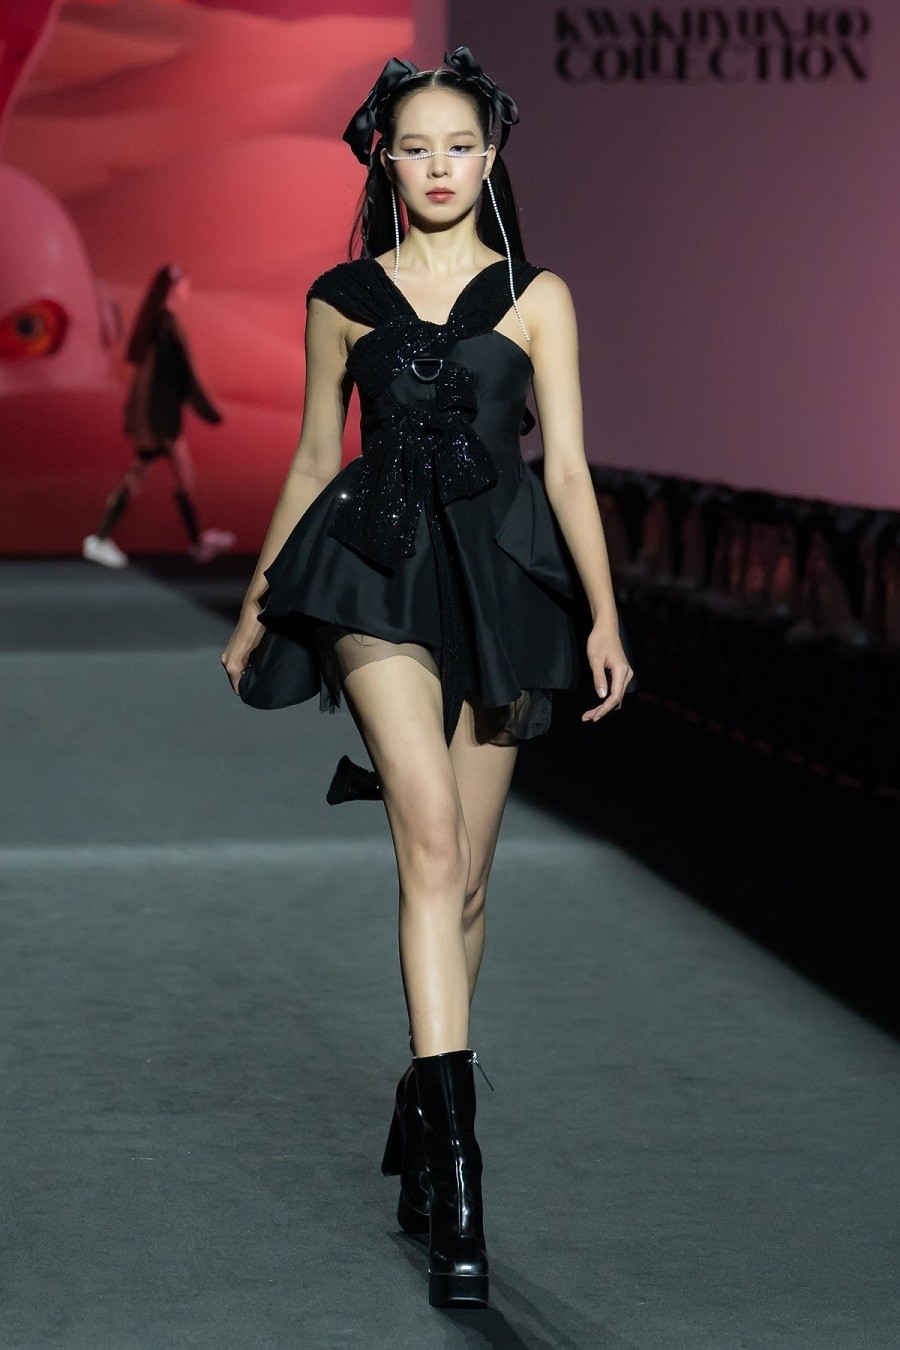 Hoa hậu Thanh Thủy khoe đôi chân thẳng dài với đầm đen ngắn của nhà thiết kế Kwak Hyun Joo. Diện trang phục nữ tính nhưng mỹ nhân 21 tuổi vẫn giữ thần thái sắc lạnh. Cô được khen catwalk mềm mại, uyển chuyển trên đường băng.